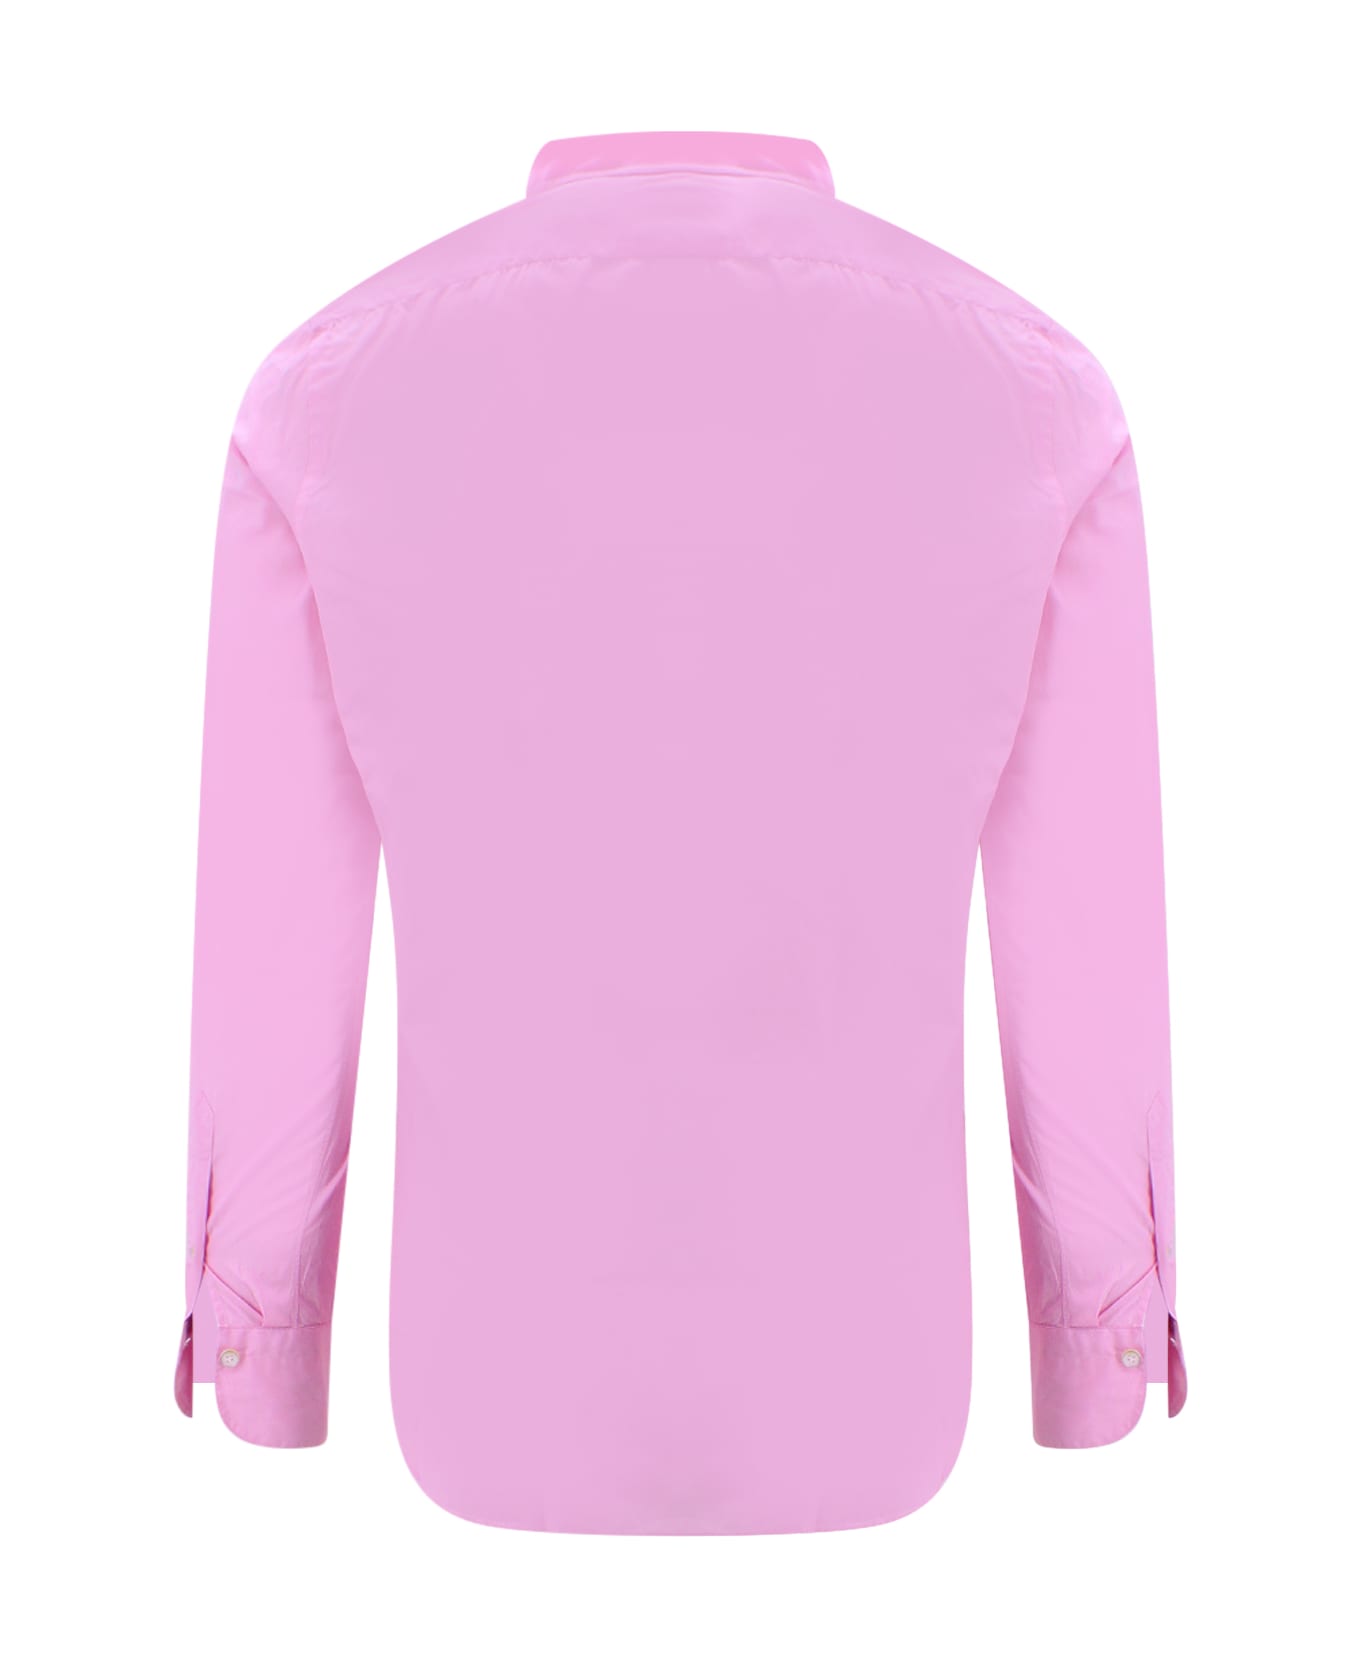 Finamore Shirt - Pink シャツ